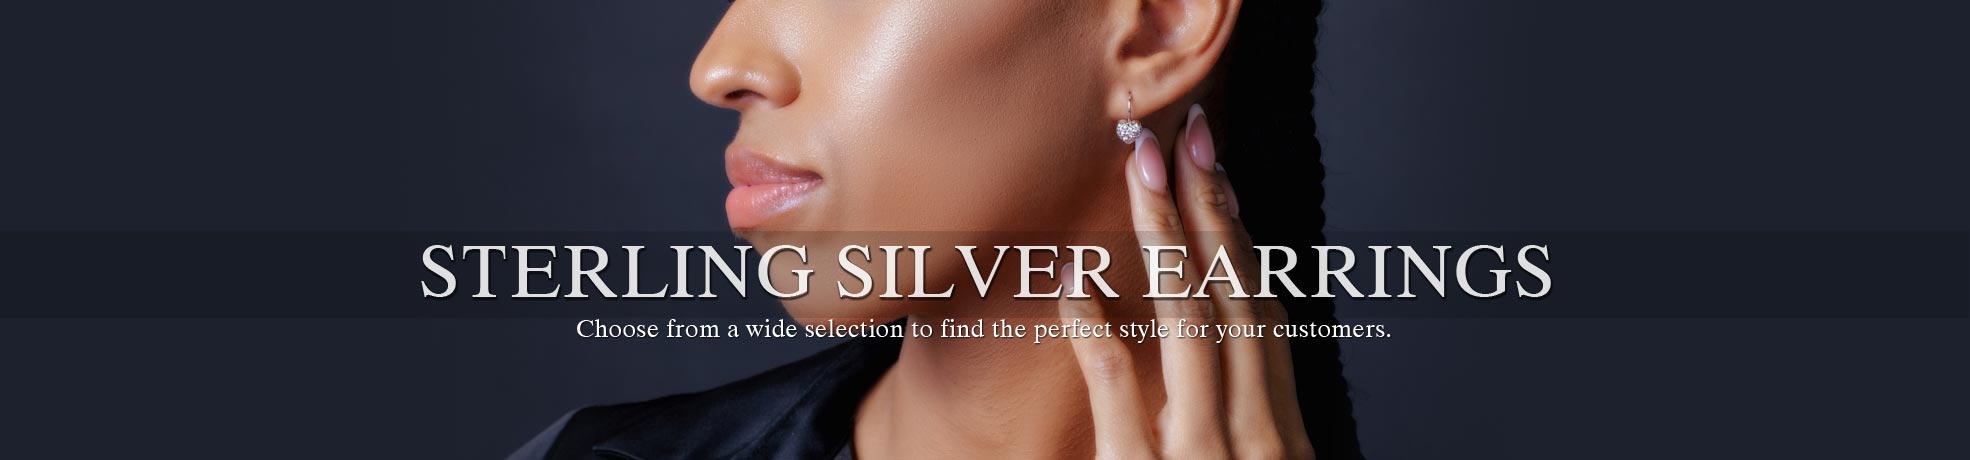 Buy 50 Silver Earrings , Wholesale Silver Earrings , Assorted Silver  Earrings , Elegant Silver Earrings , Maasai Earrings , Bulk Silver Earrings  Online in India - Etsy